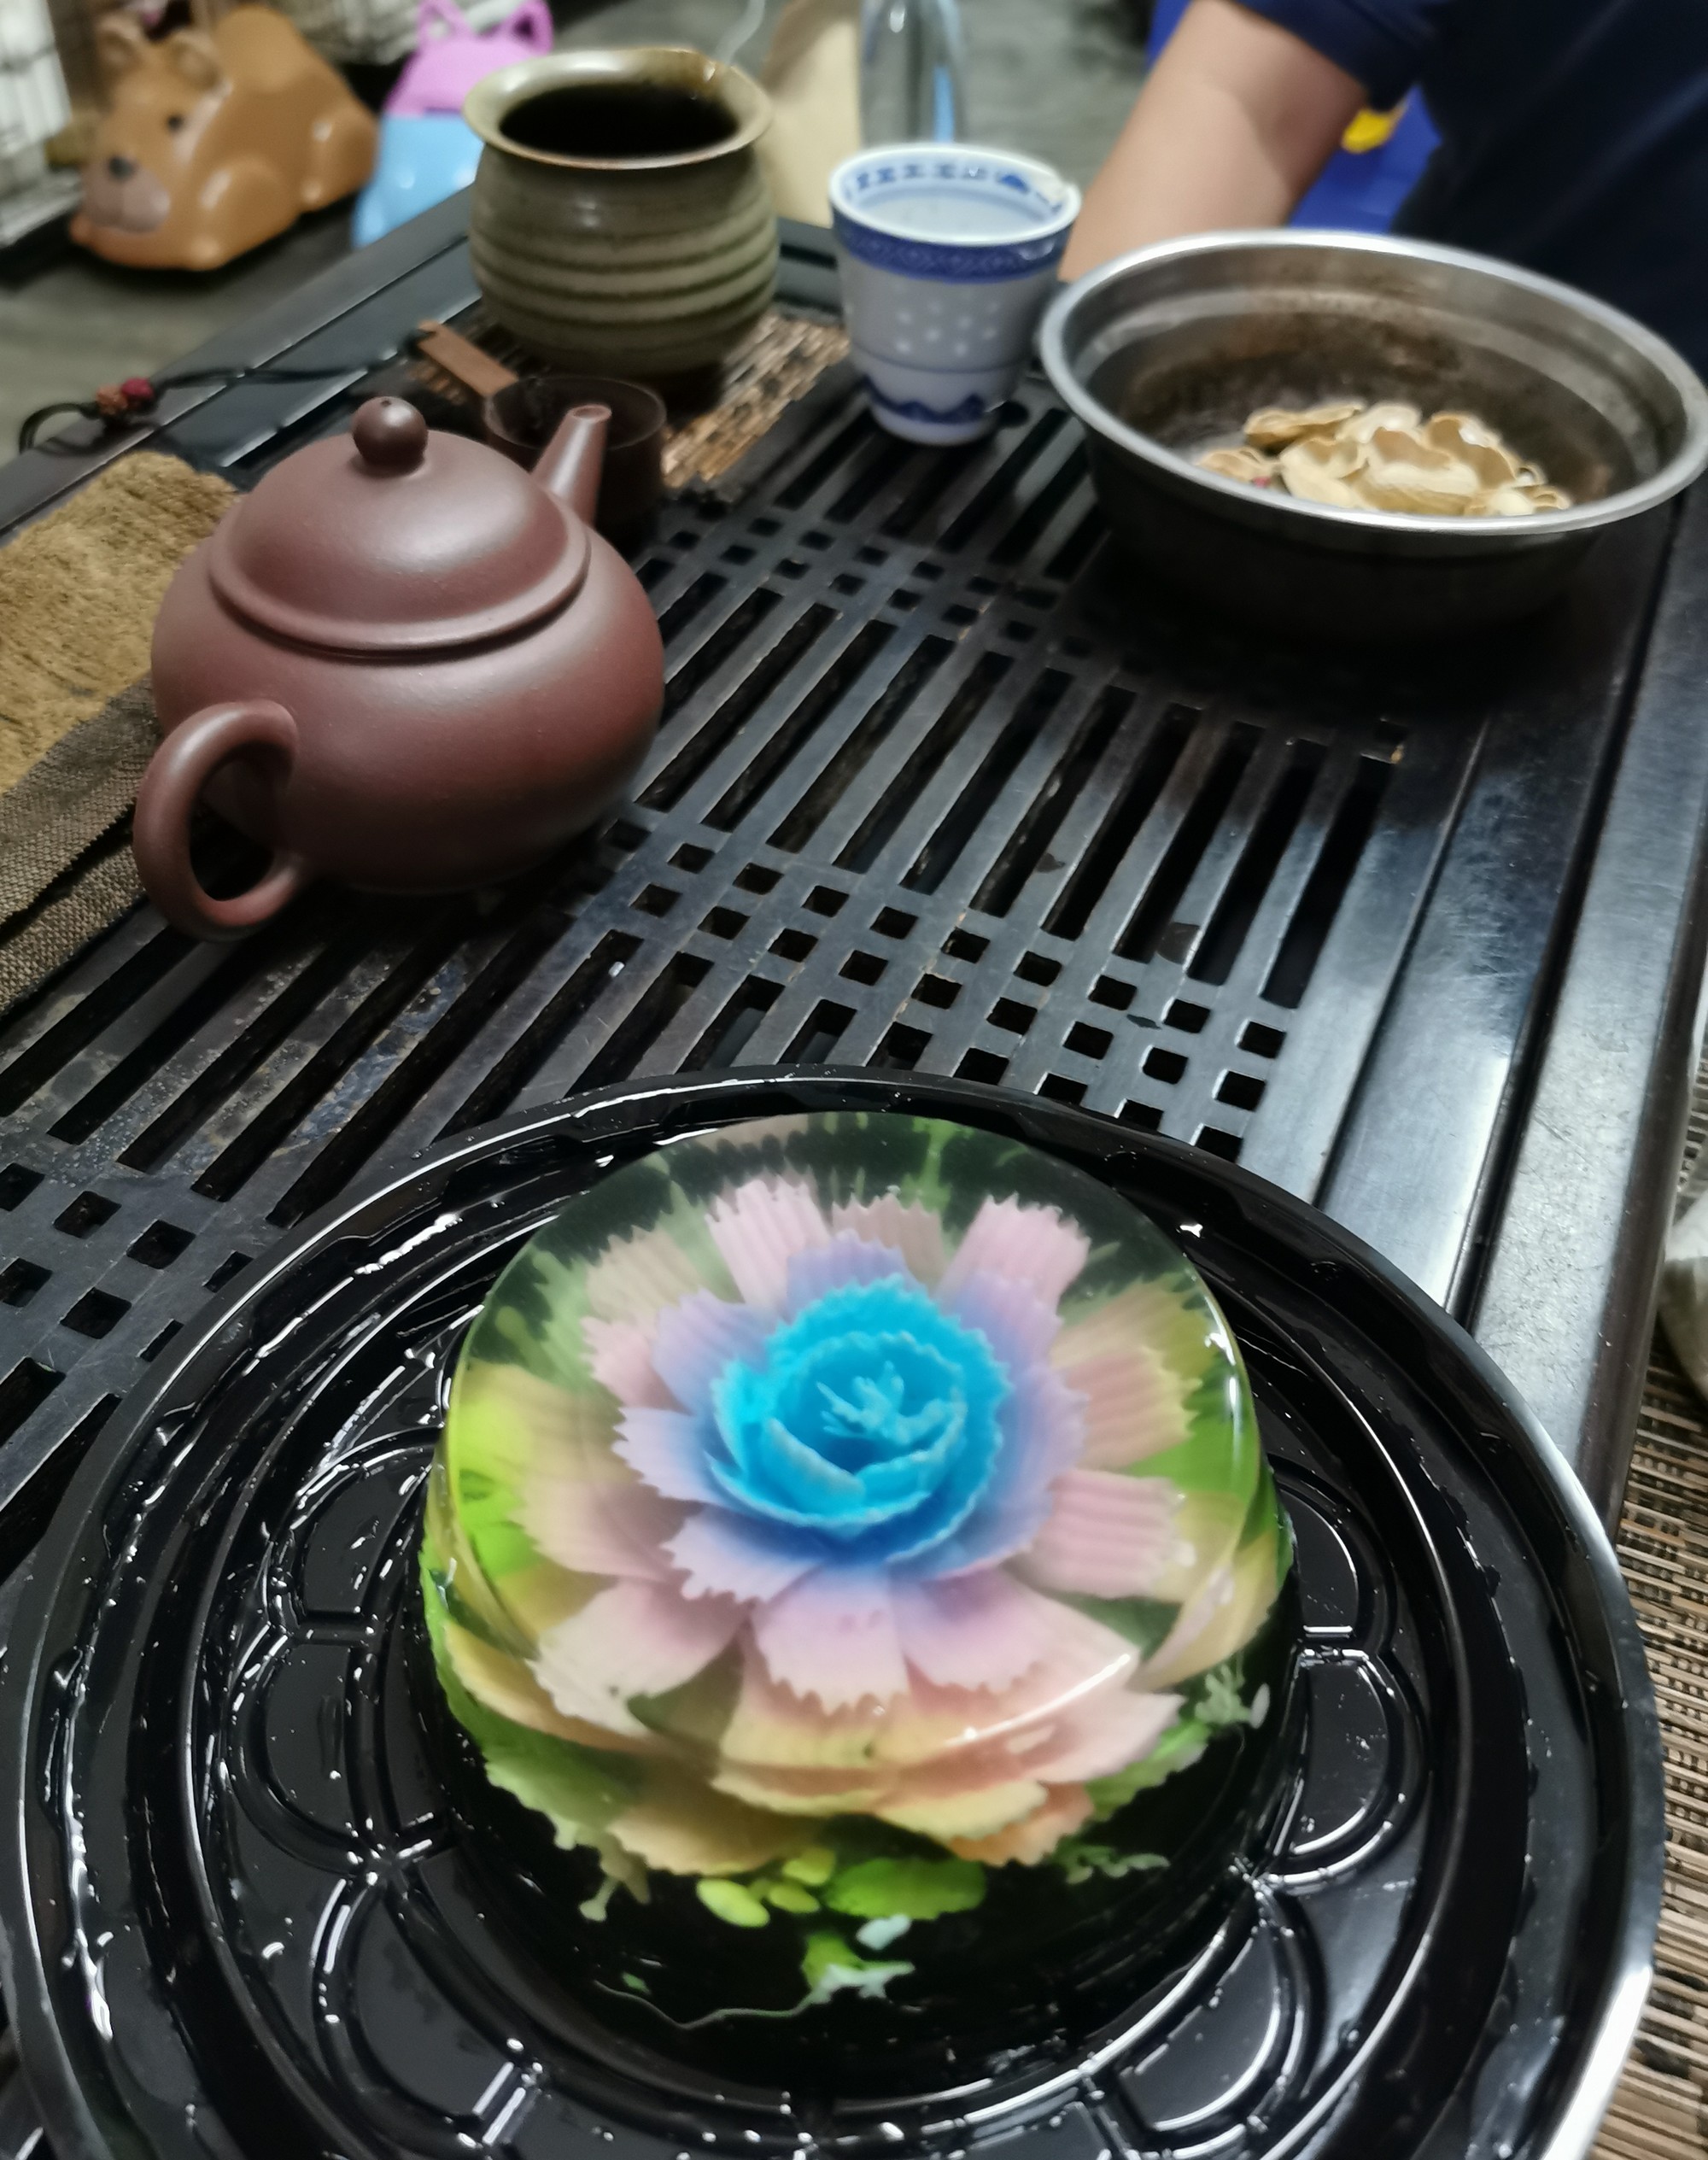   柔：时尚记事簿（7月23日见报）：发挥创意亲手制作，独一无二的3D燕菜花蛋糕